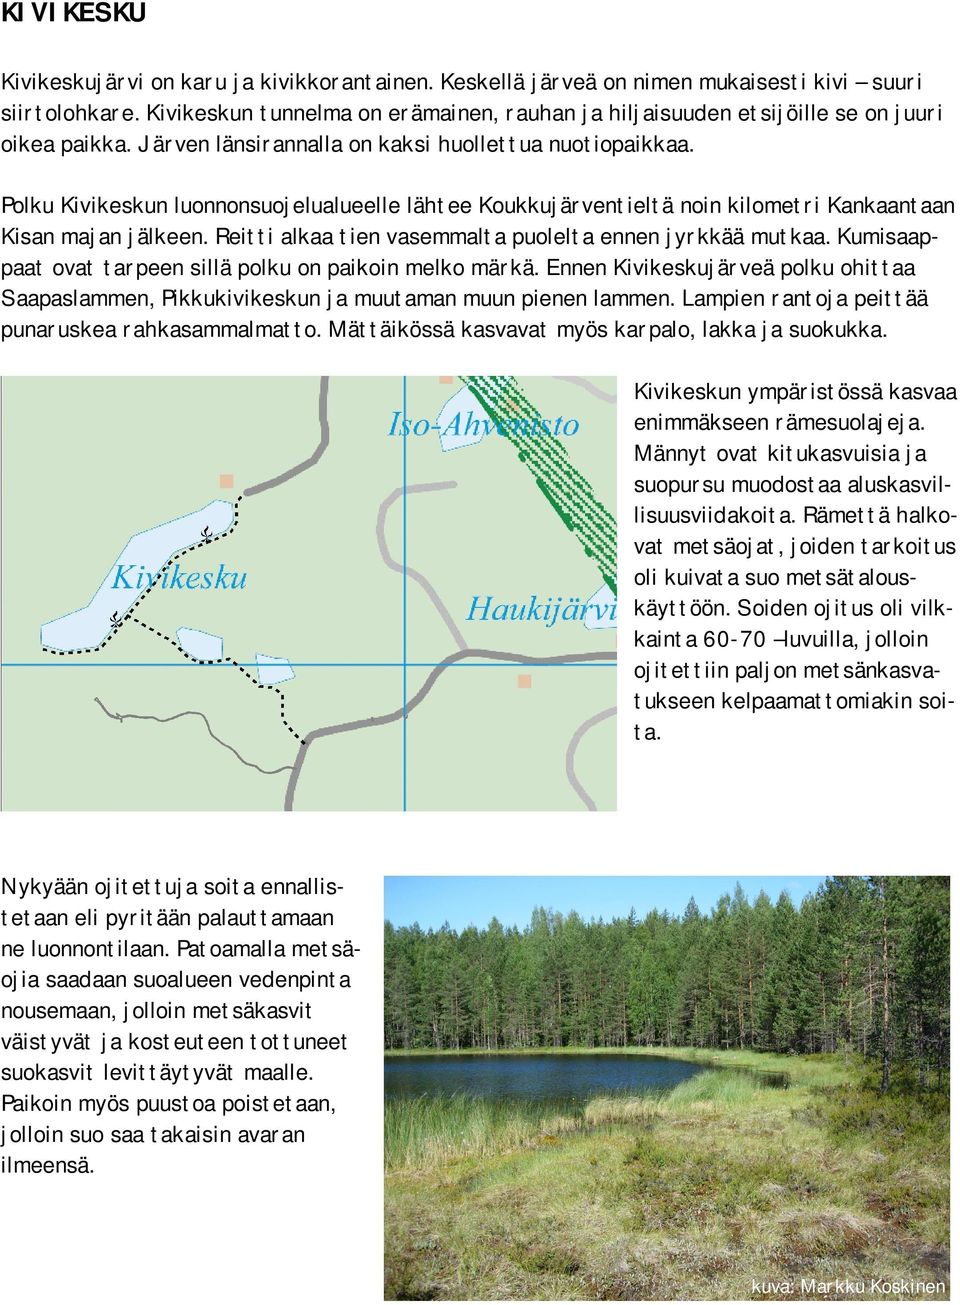 Polku Kivikeskun luonnonsuojelualueelle lähtee Koukkujärventieltä noin kilometri Kankaantaan Kisan majan jälkeen. Reitti alkaa tien vasemmalta puolelta ennen jyrkkää mutkaa.